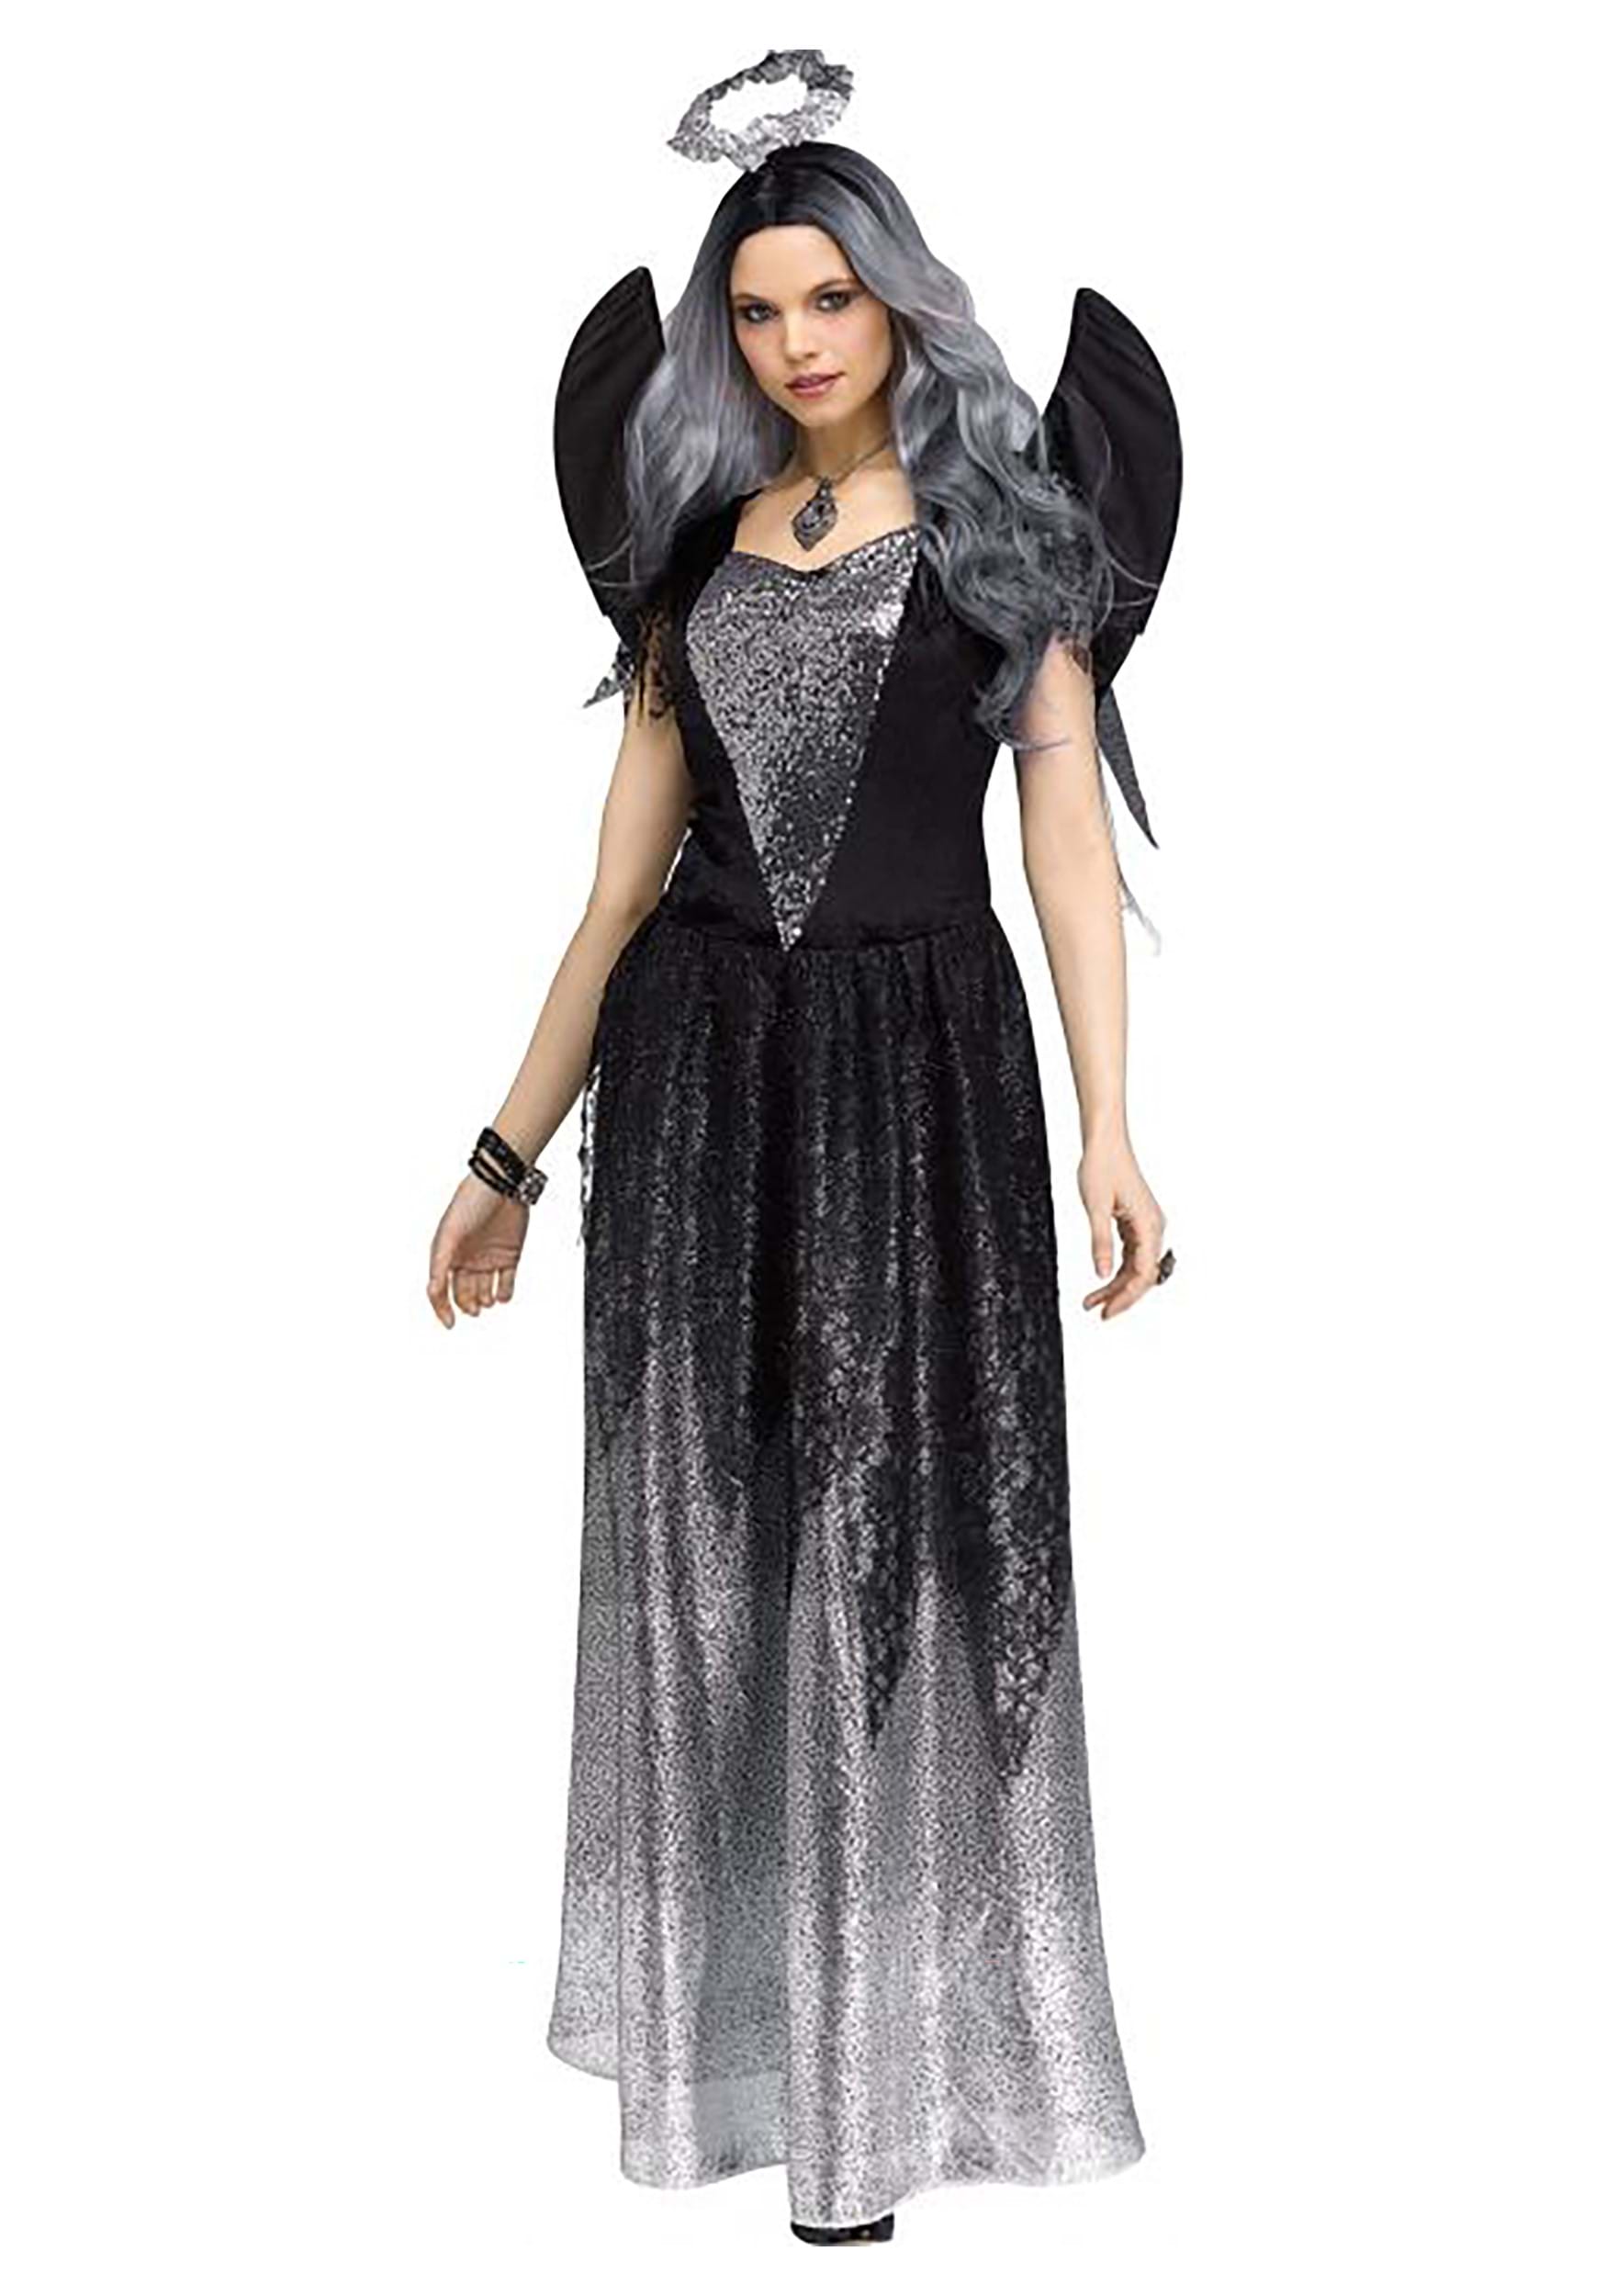 Onyx Angel Women's Fancy Dress Costume